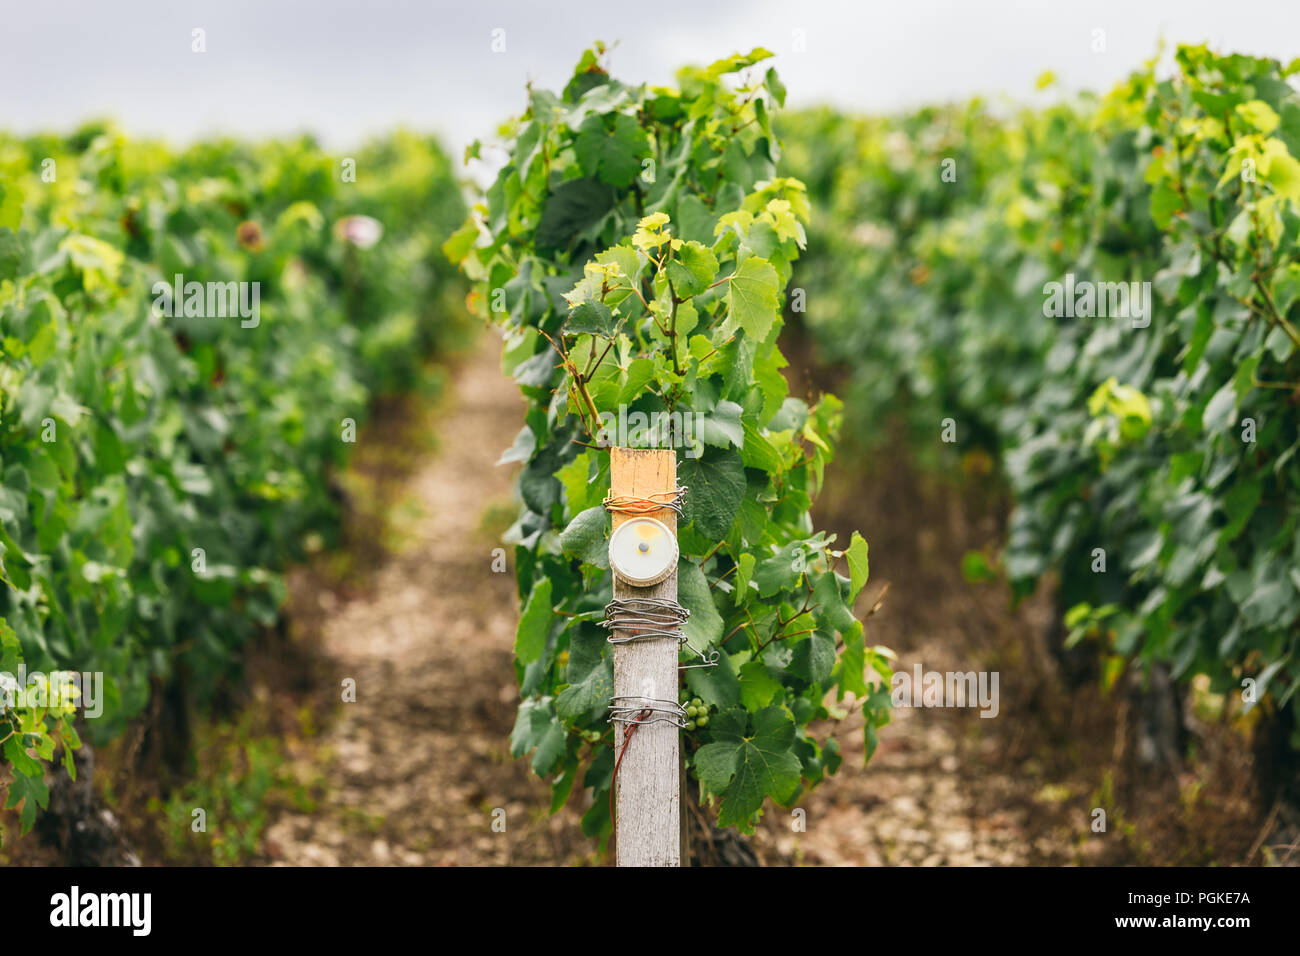 Condizioni di produzione di uva in Francia, sul grapevine speciali sensori sono installati, vinificazione in Francia Foto Stock